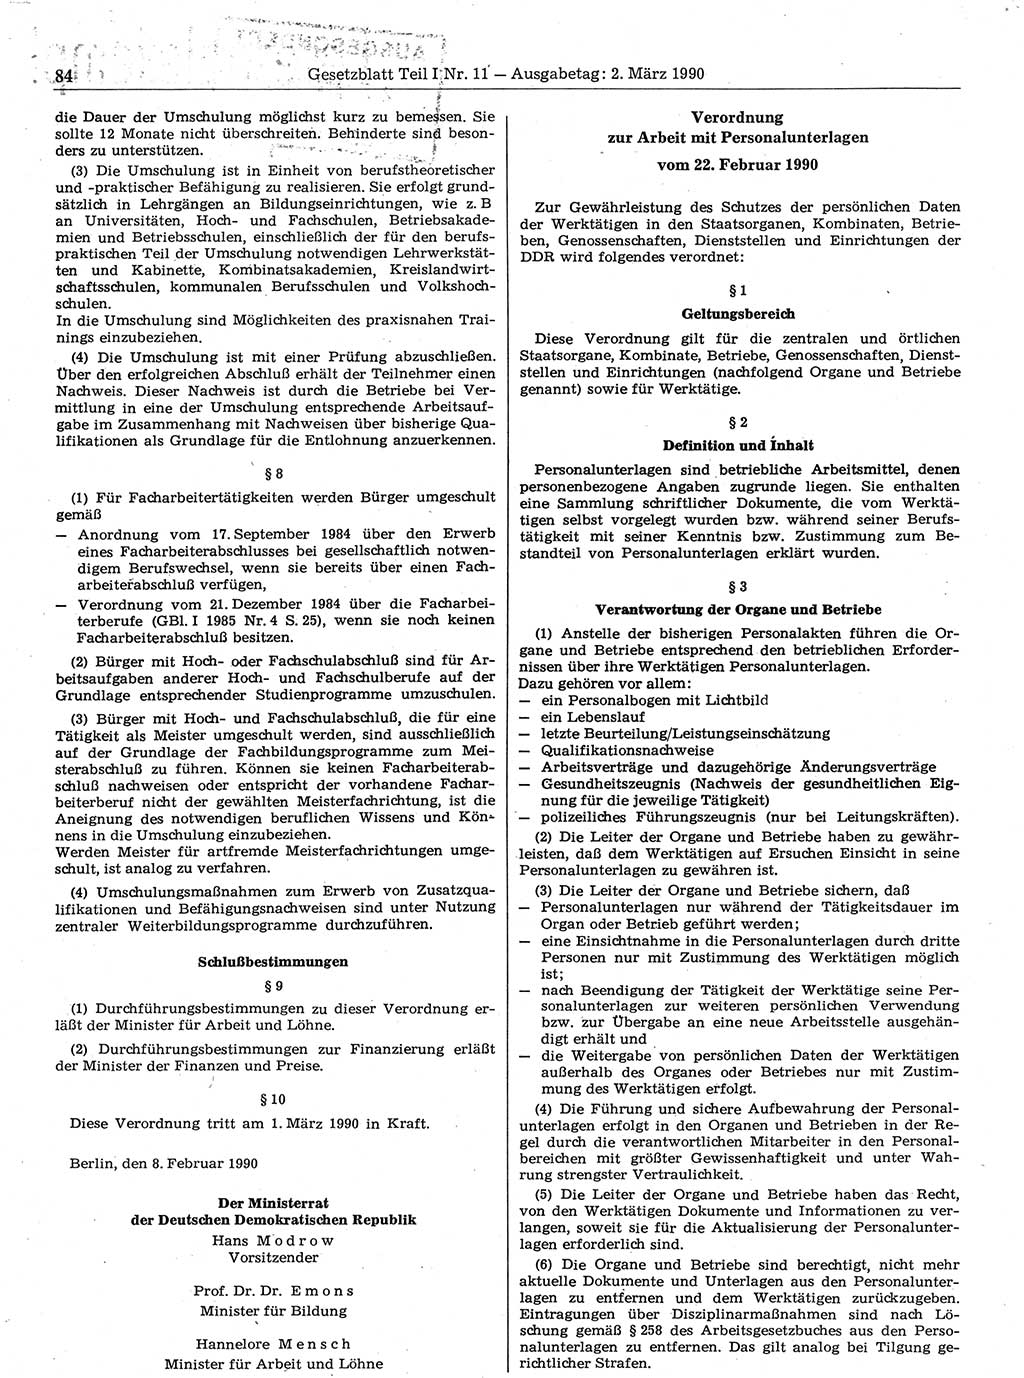 Gesetzblatt (GBl.) der Deutschen Demokratischen Republik (DDR) Teil Ⅰ 1990, Seite 84 (GBl. DDR Ⅰ 1990, S. 84)